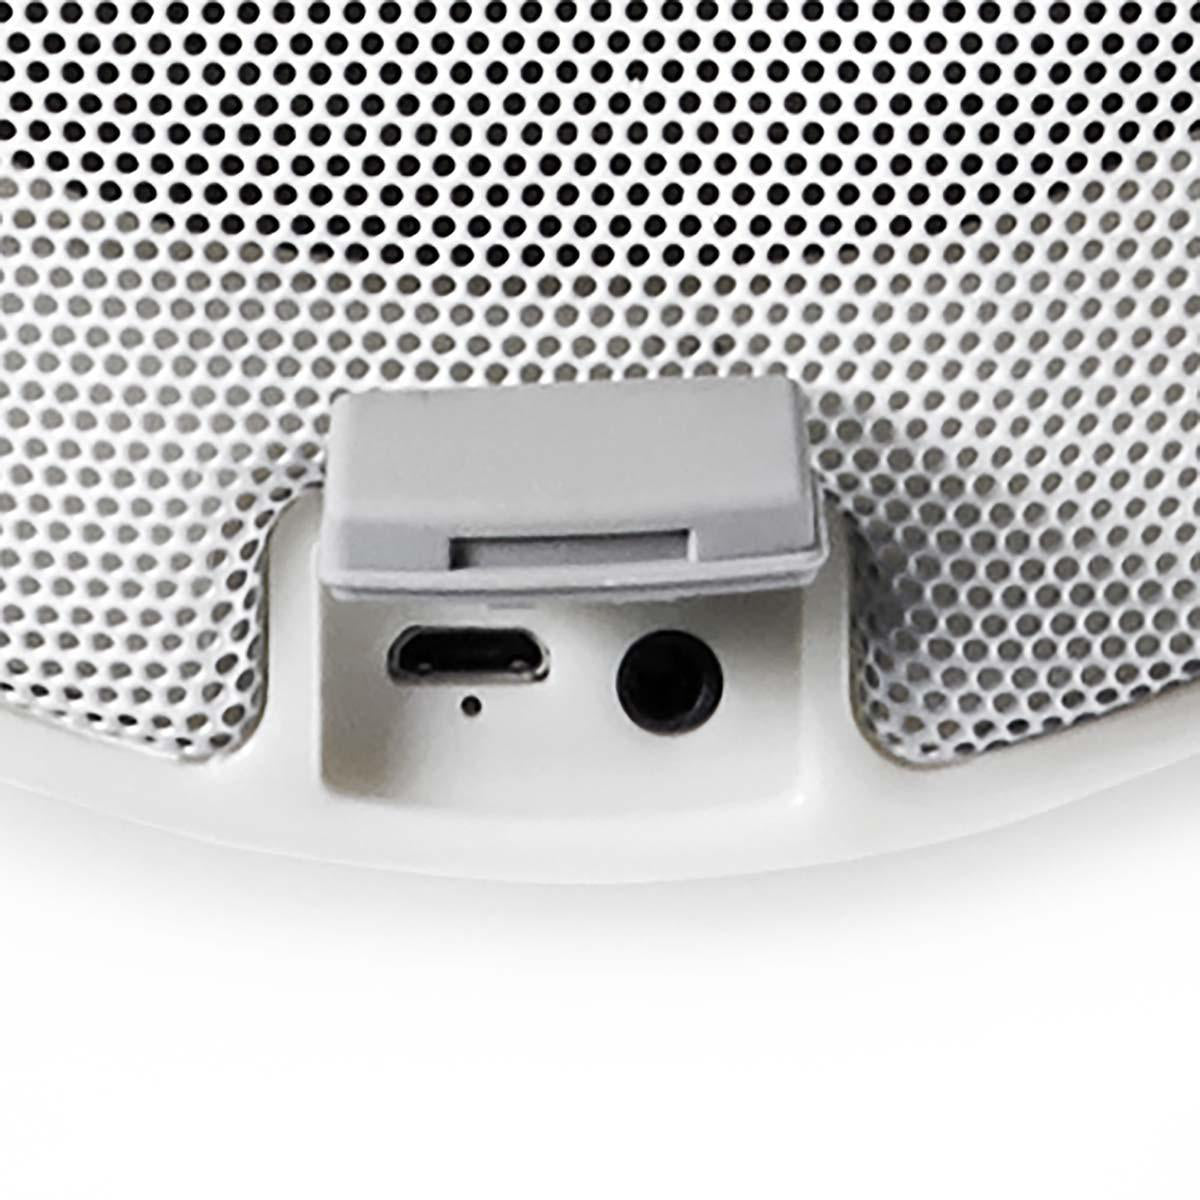 Bluetooth-Lautsprecher mit Mood Light RGB jetzt kaufen - Aktionskönig 